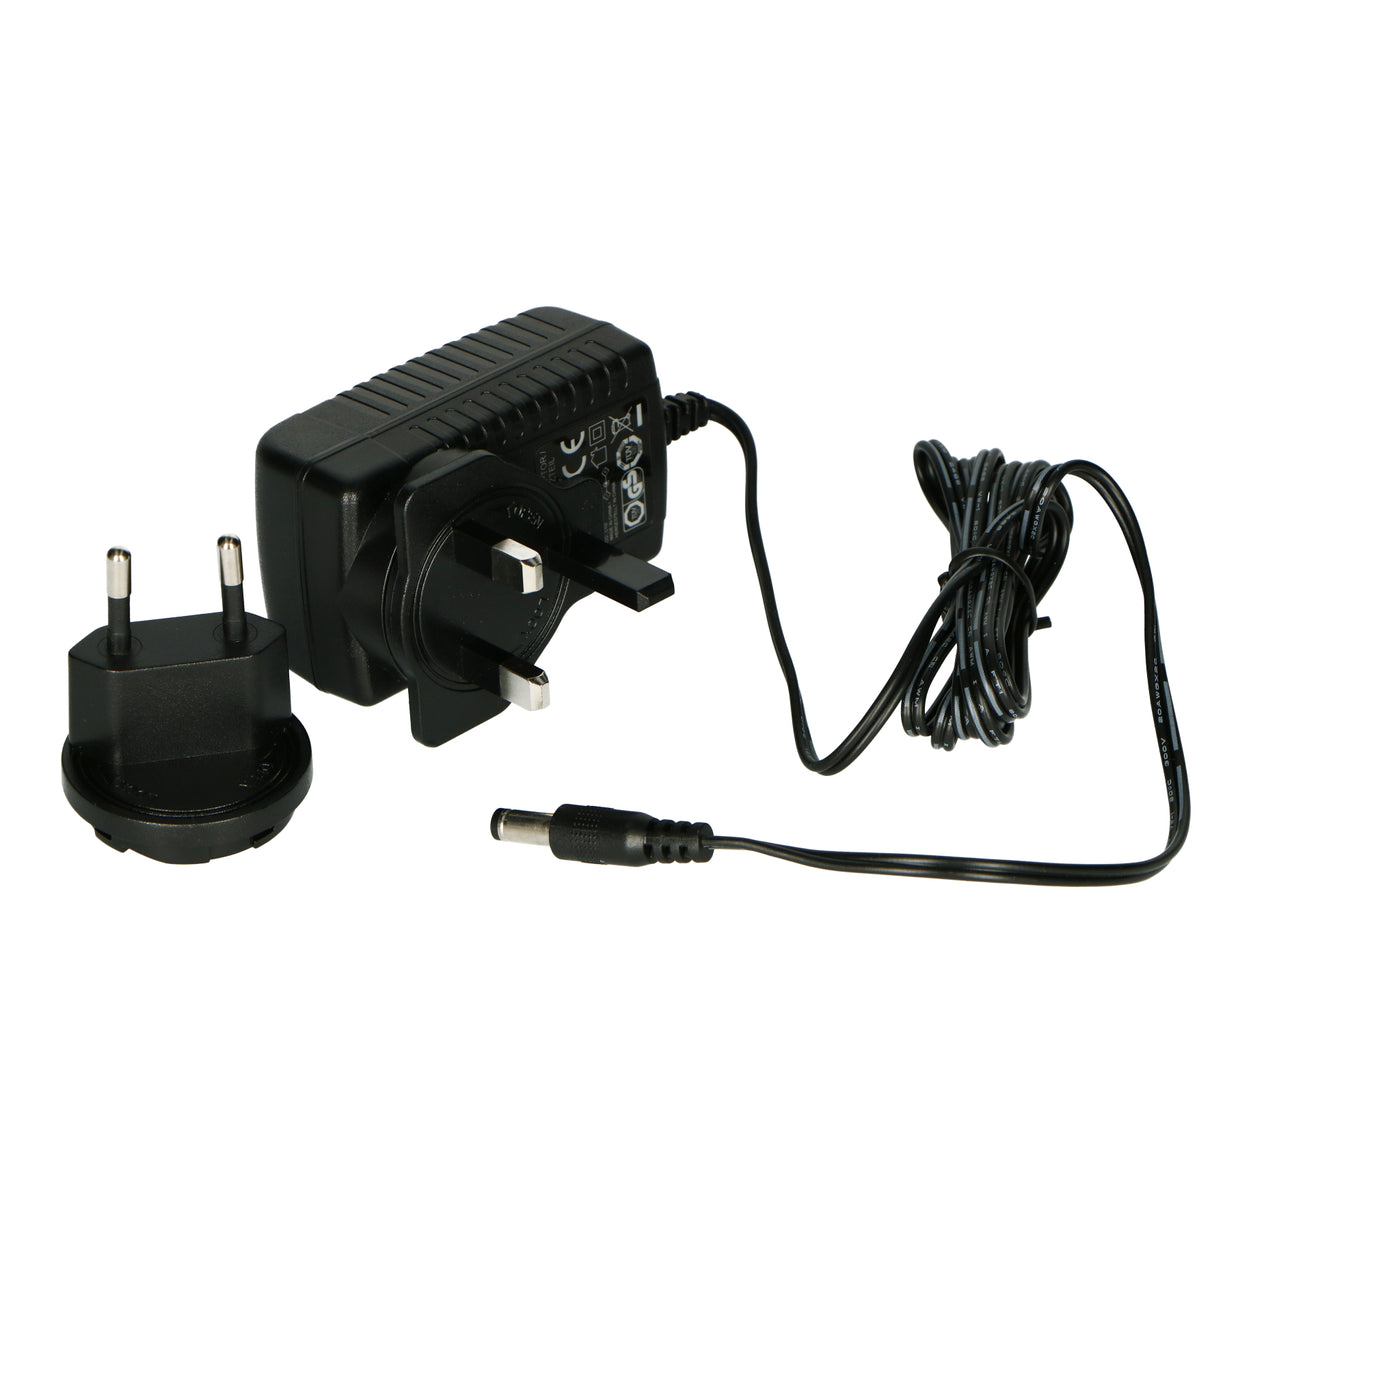 P001694 - Multiplug adaptateur secteur LS-300